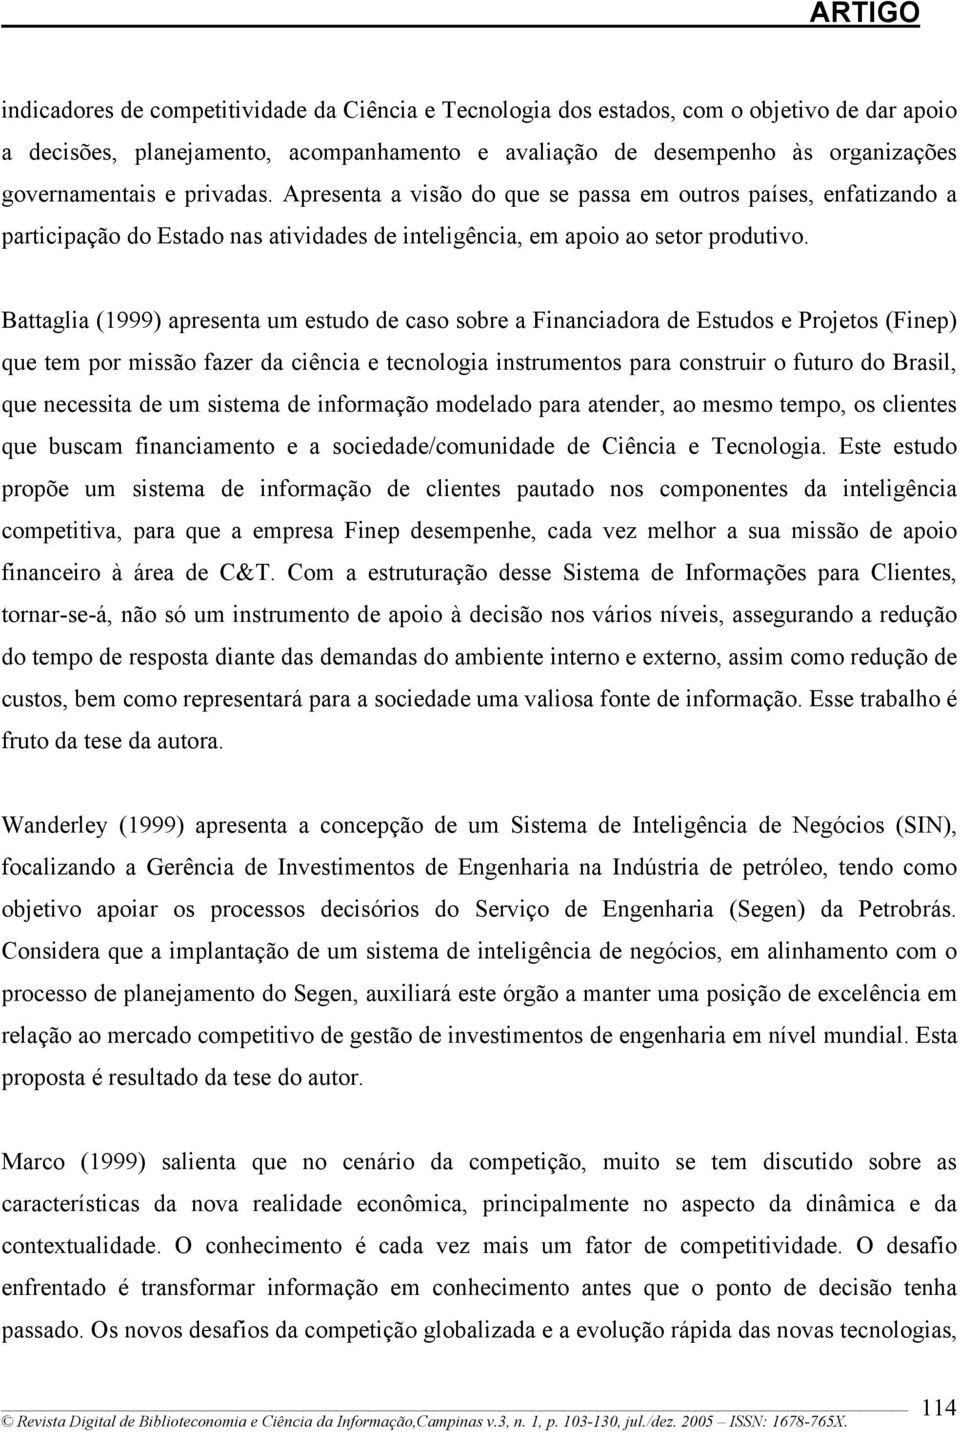 Battaglia (1999) apresenta um estudo de caso sobre a Financiadora de Estudos e Projetos (Finep) que tem por missão fazer da ciência e tecnologia instrumentos para construir o futuro do Brasil, que